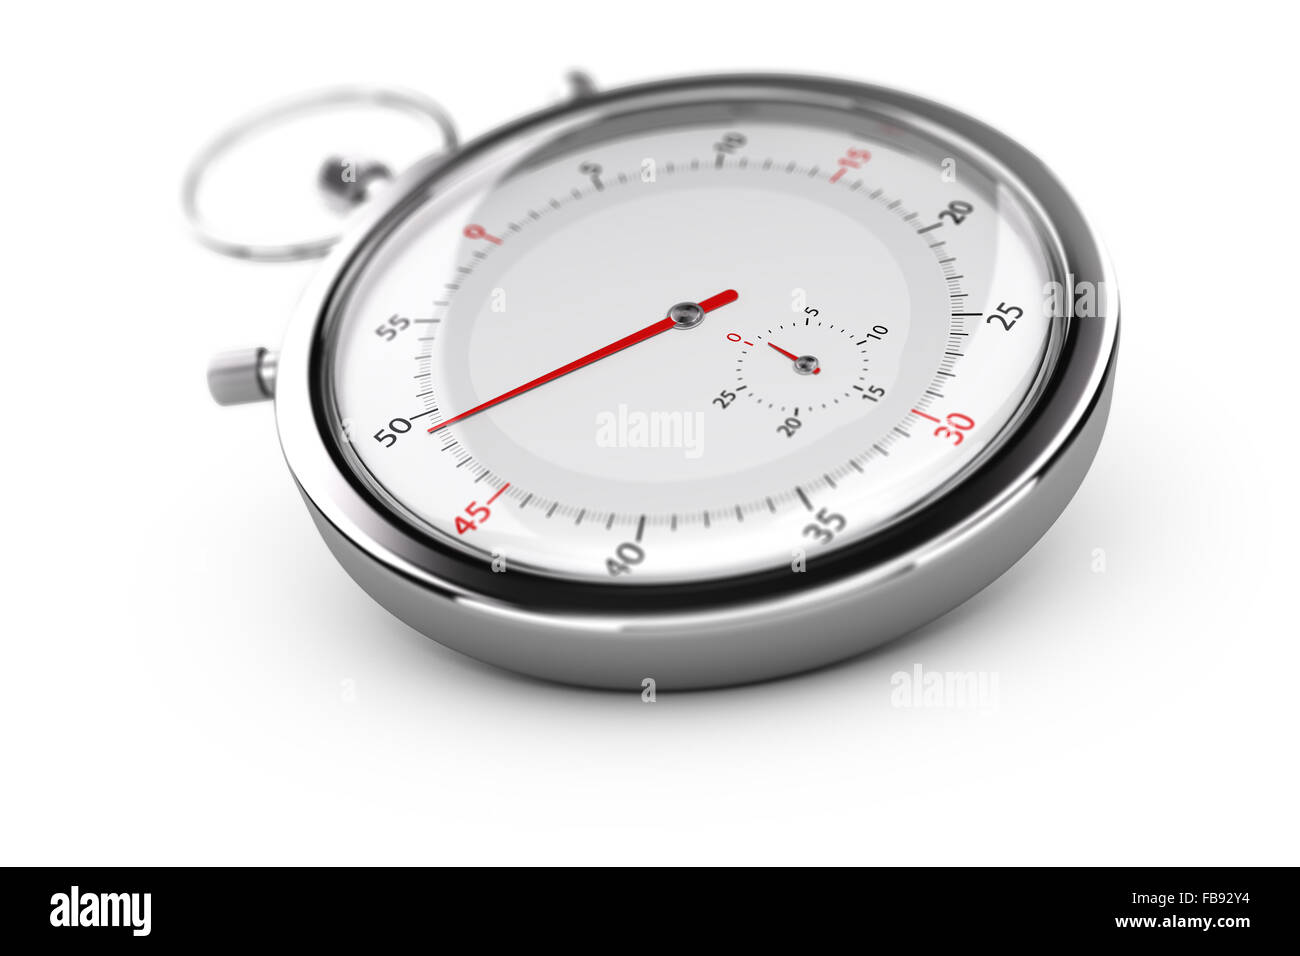 Cronografo con aghi rosso su sfondo bianco, effetto di sfocatura. concetto di misurazione o la puntualità Foto Stock